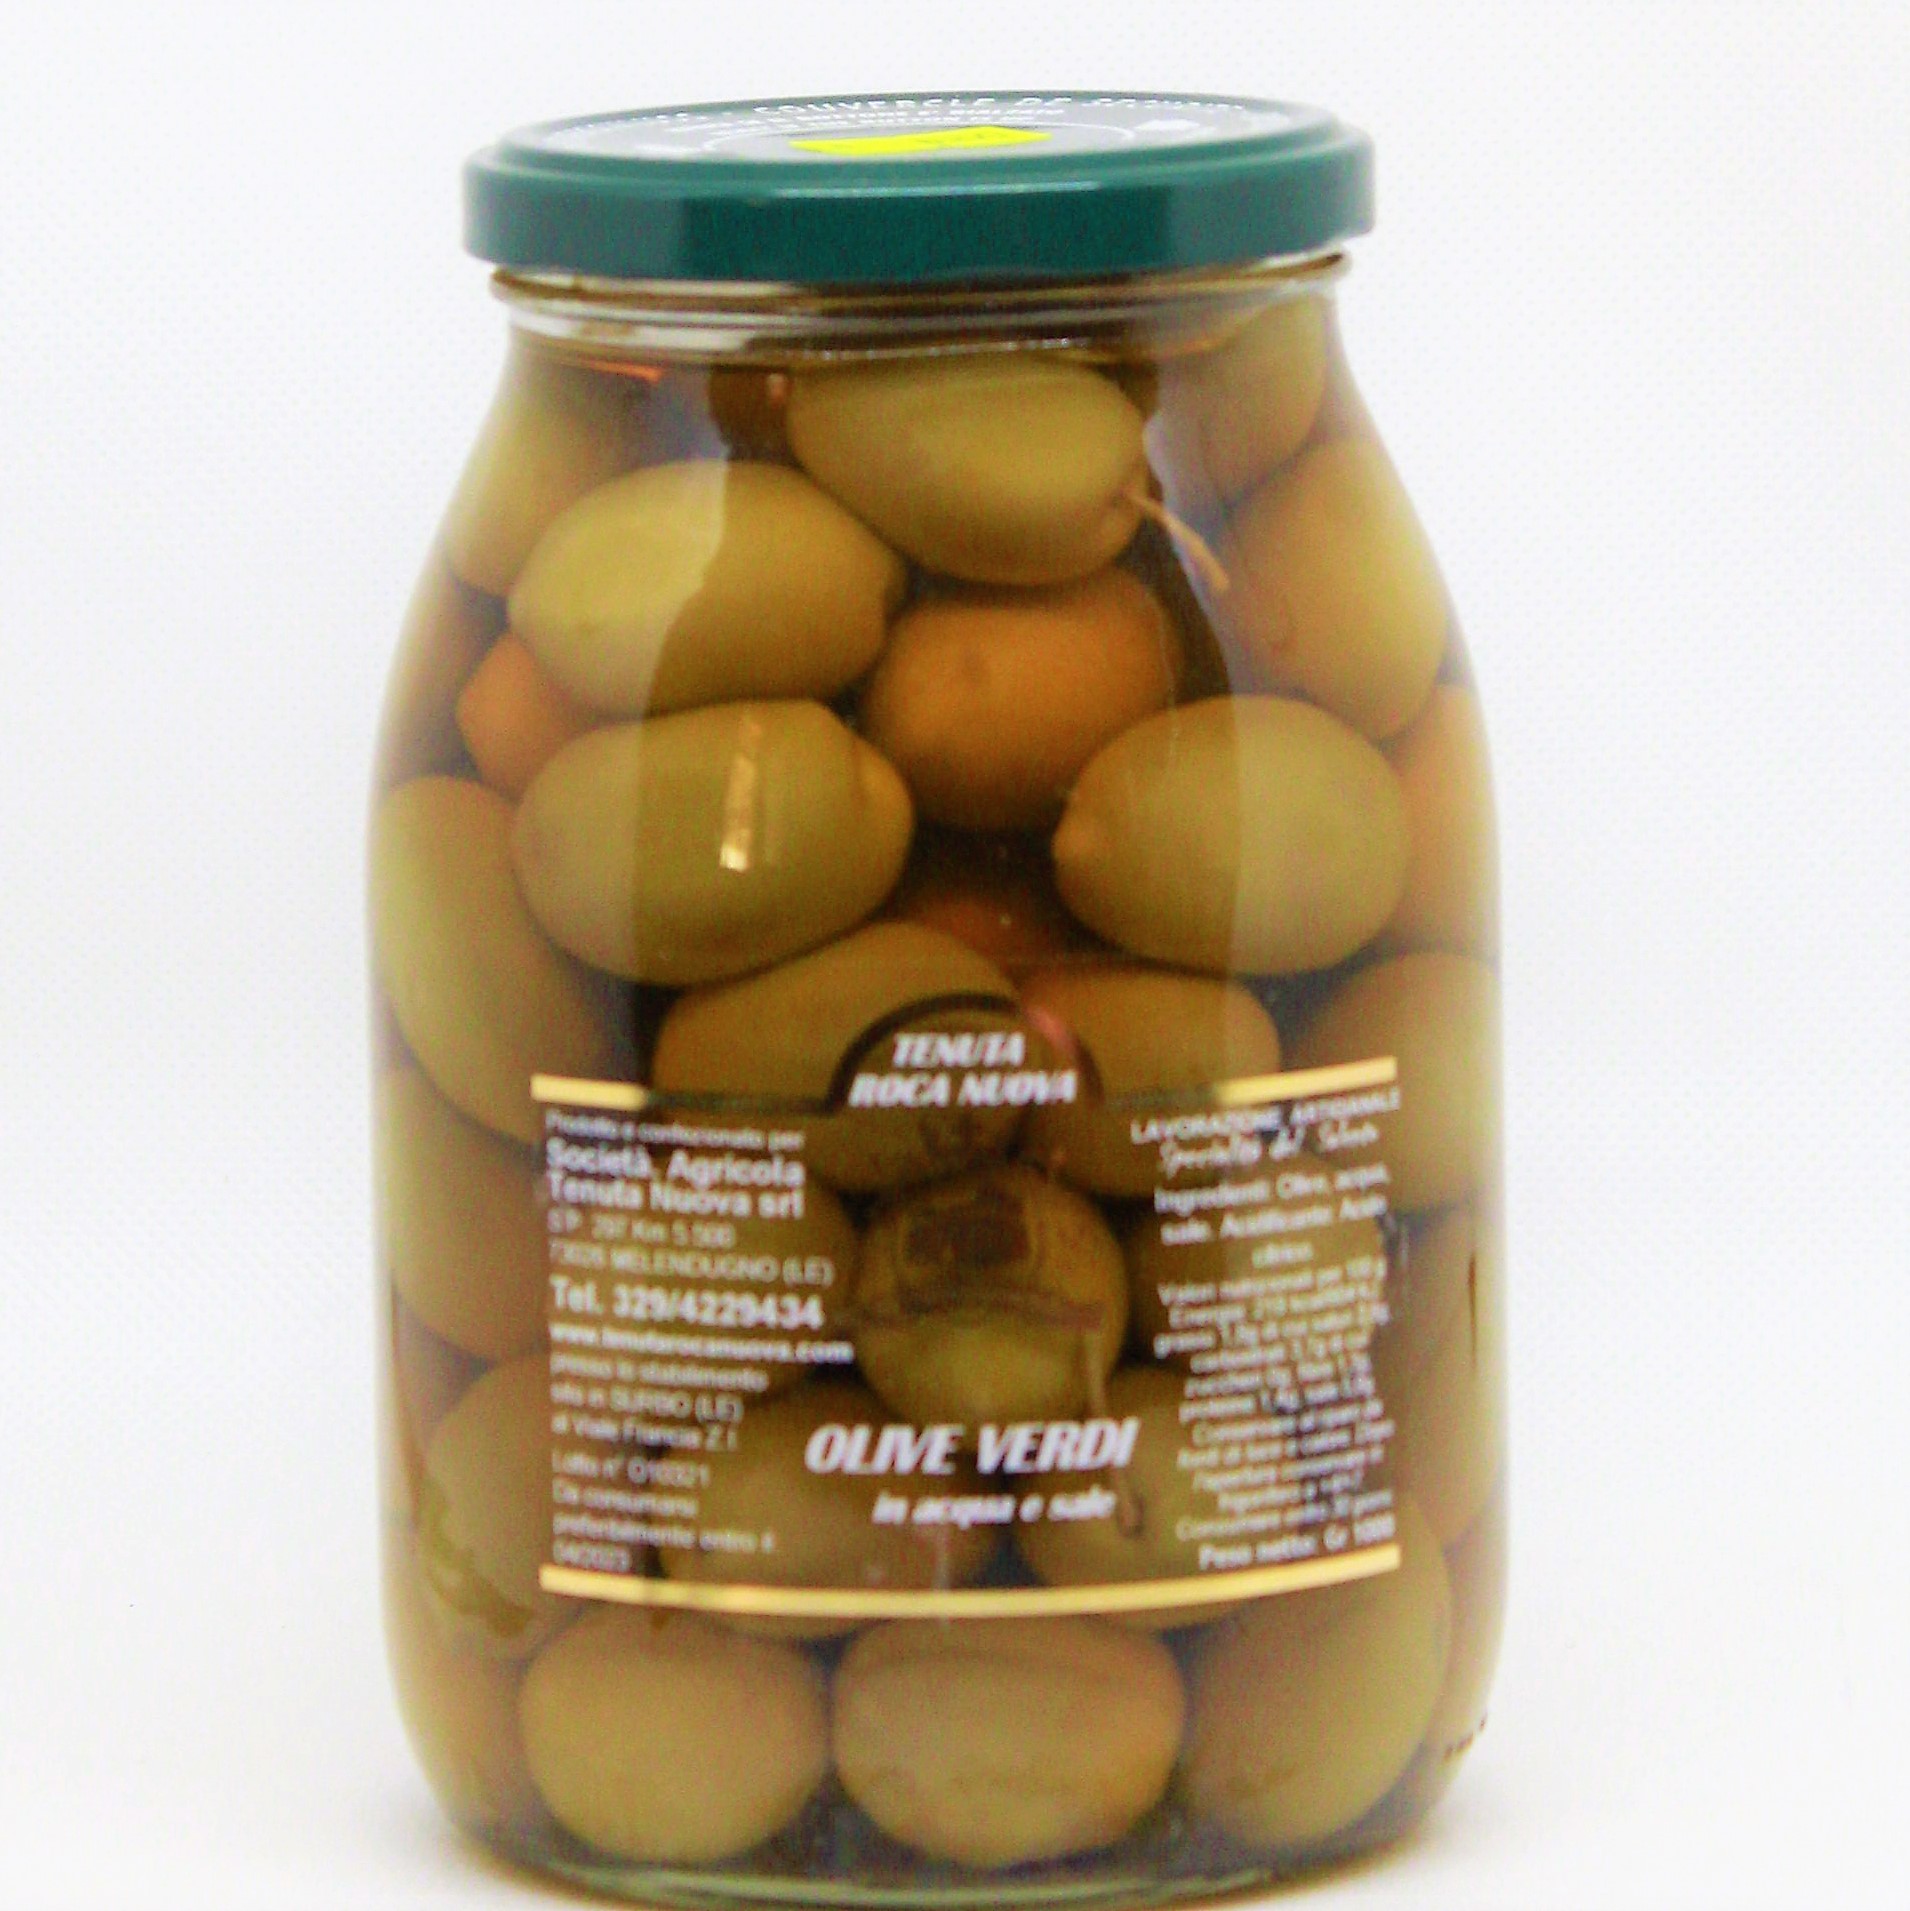 Olive-verdi-1-kg.jpg